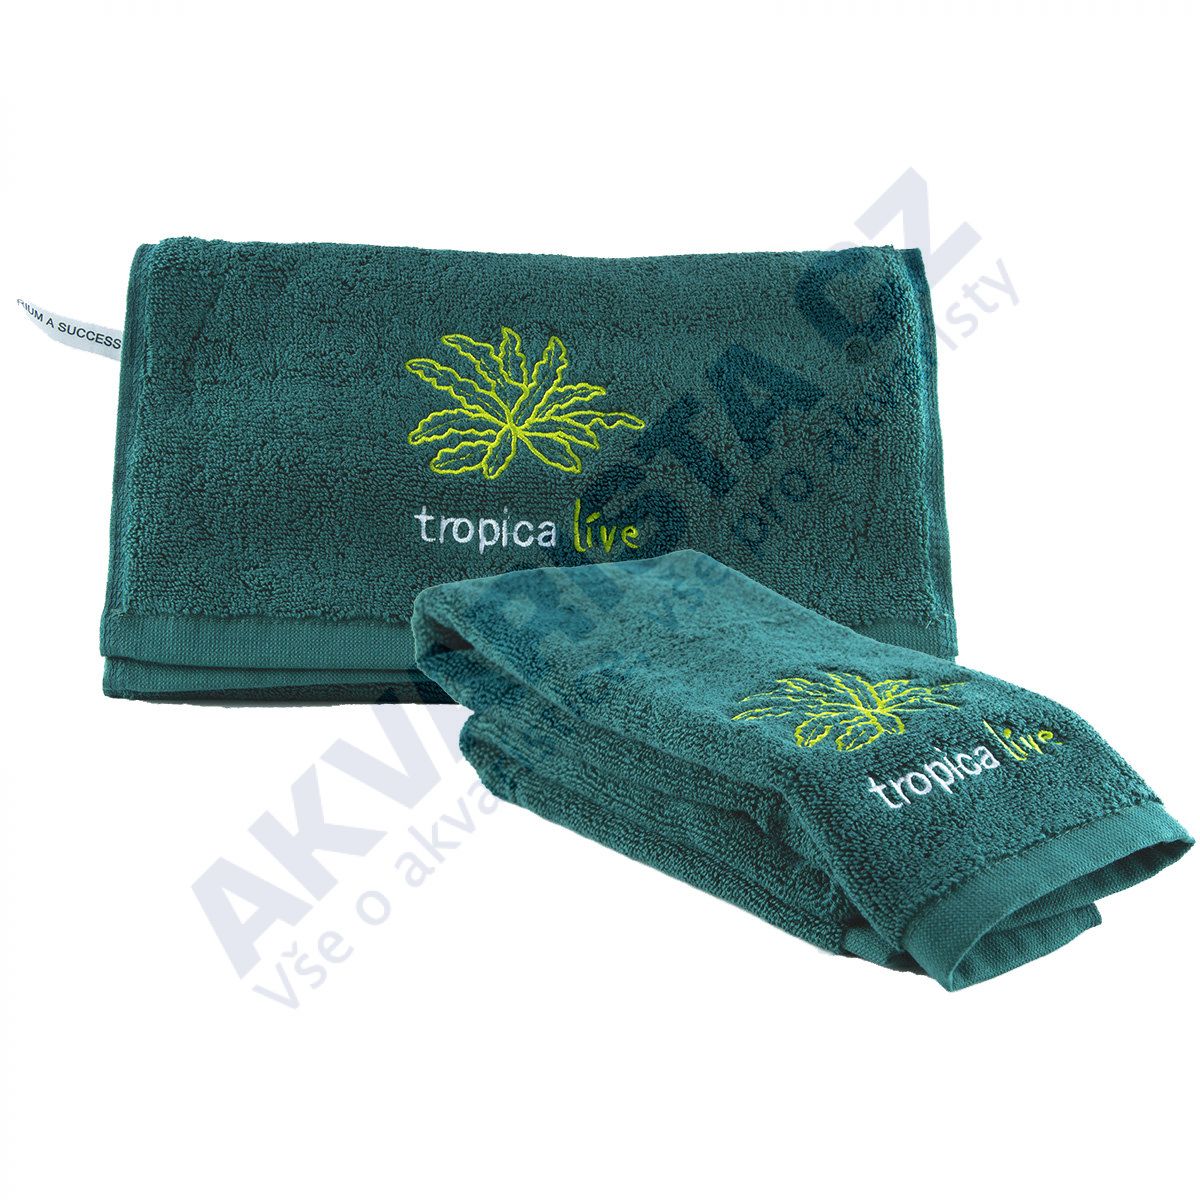 Tropica Live Towel ručník Pogostemon helferi